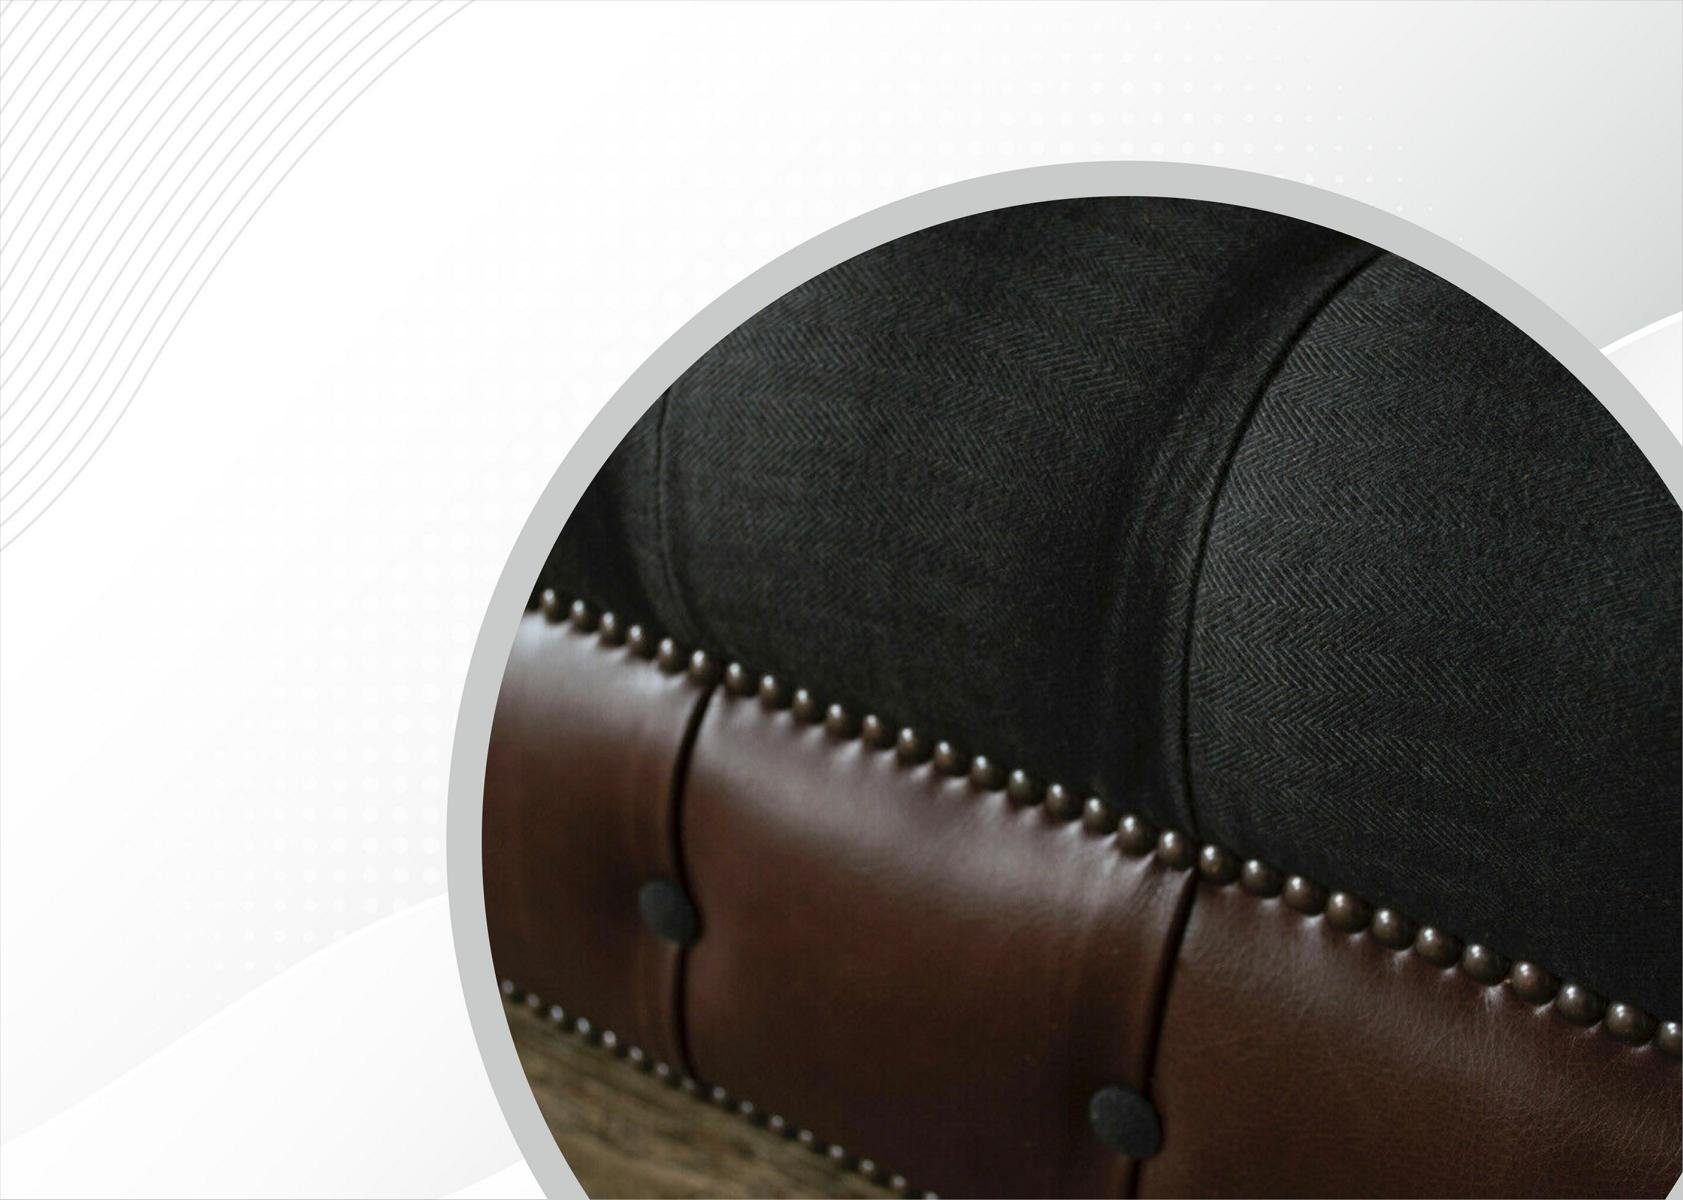 JVmoebel Sofa Chesterfield in Made Modern Design, Couch Europe schwarz-braune Wohnzimmer